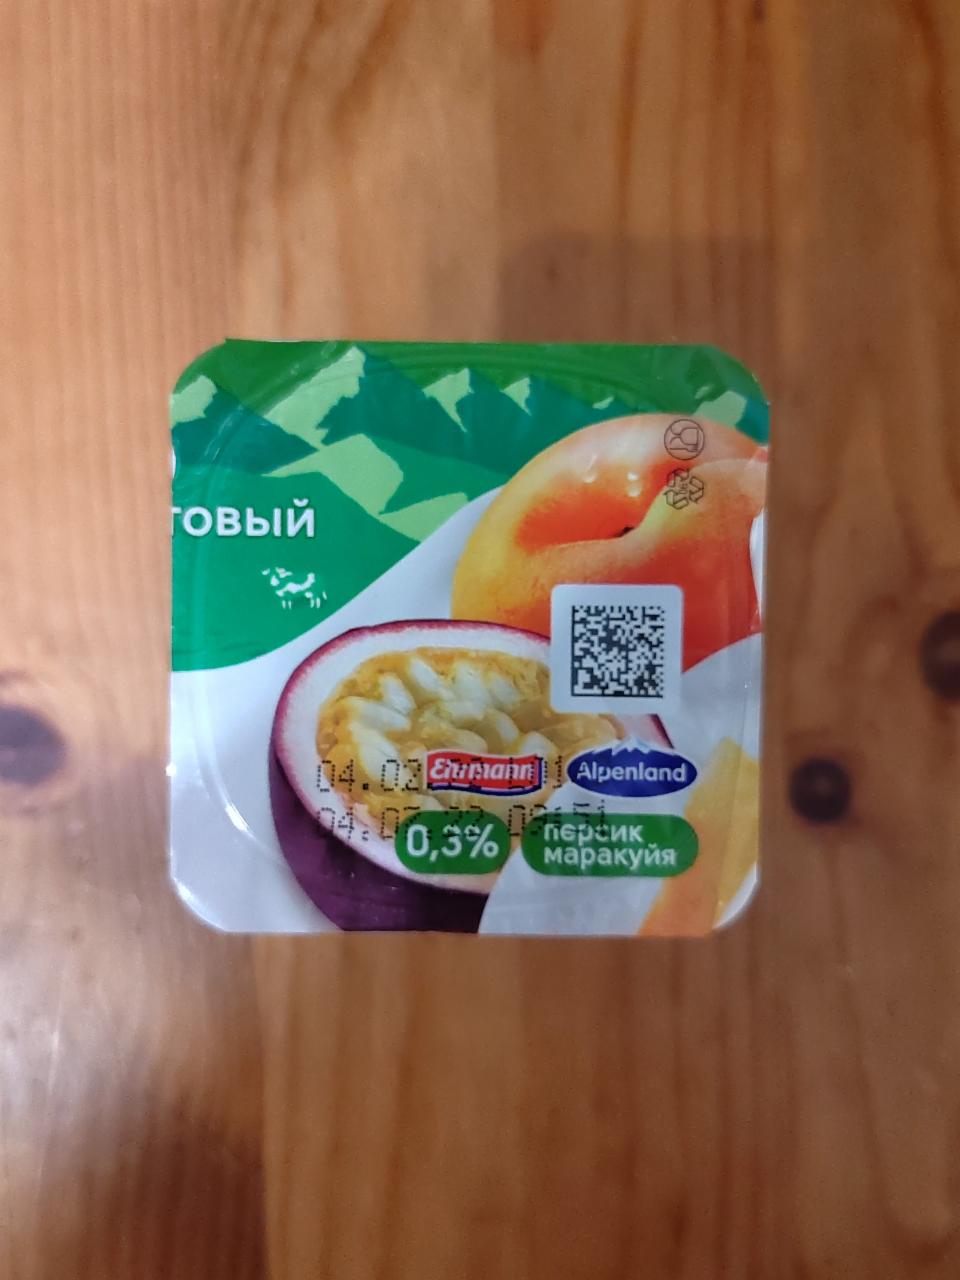 Фото - Продукт йогуртный 0.3% с персиком и маракуйей Alpenland Ehrmann